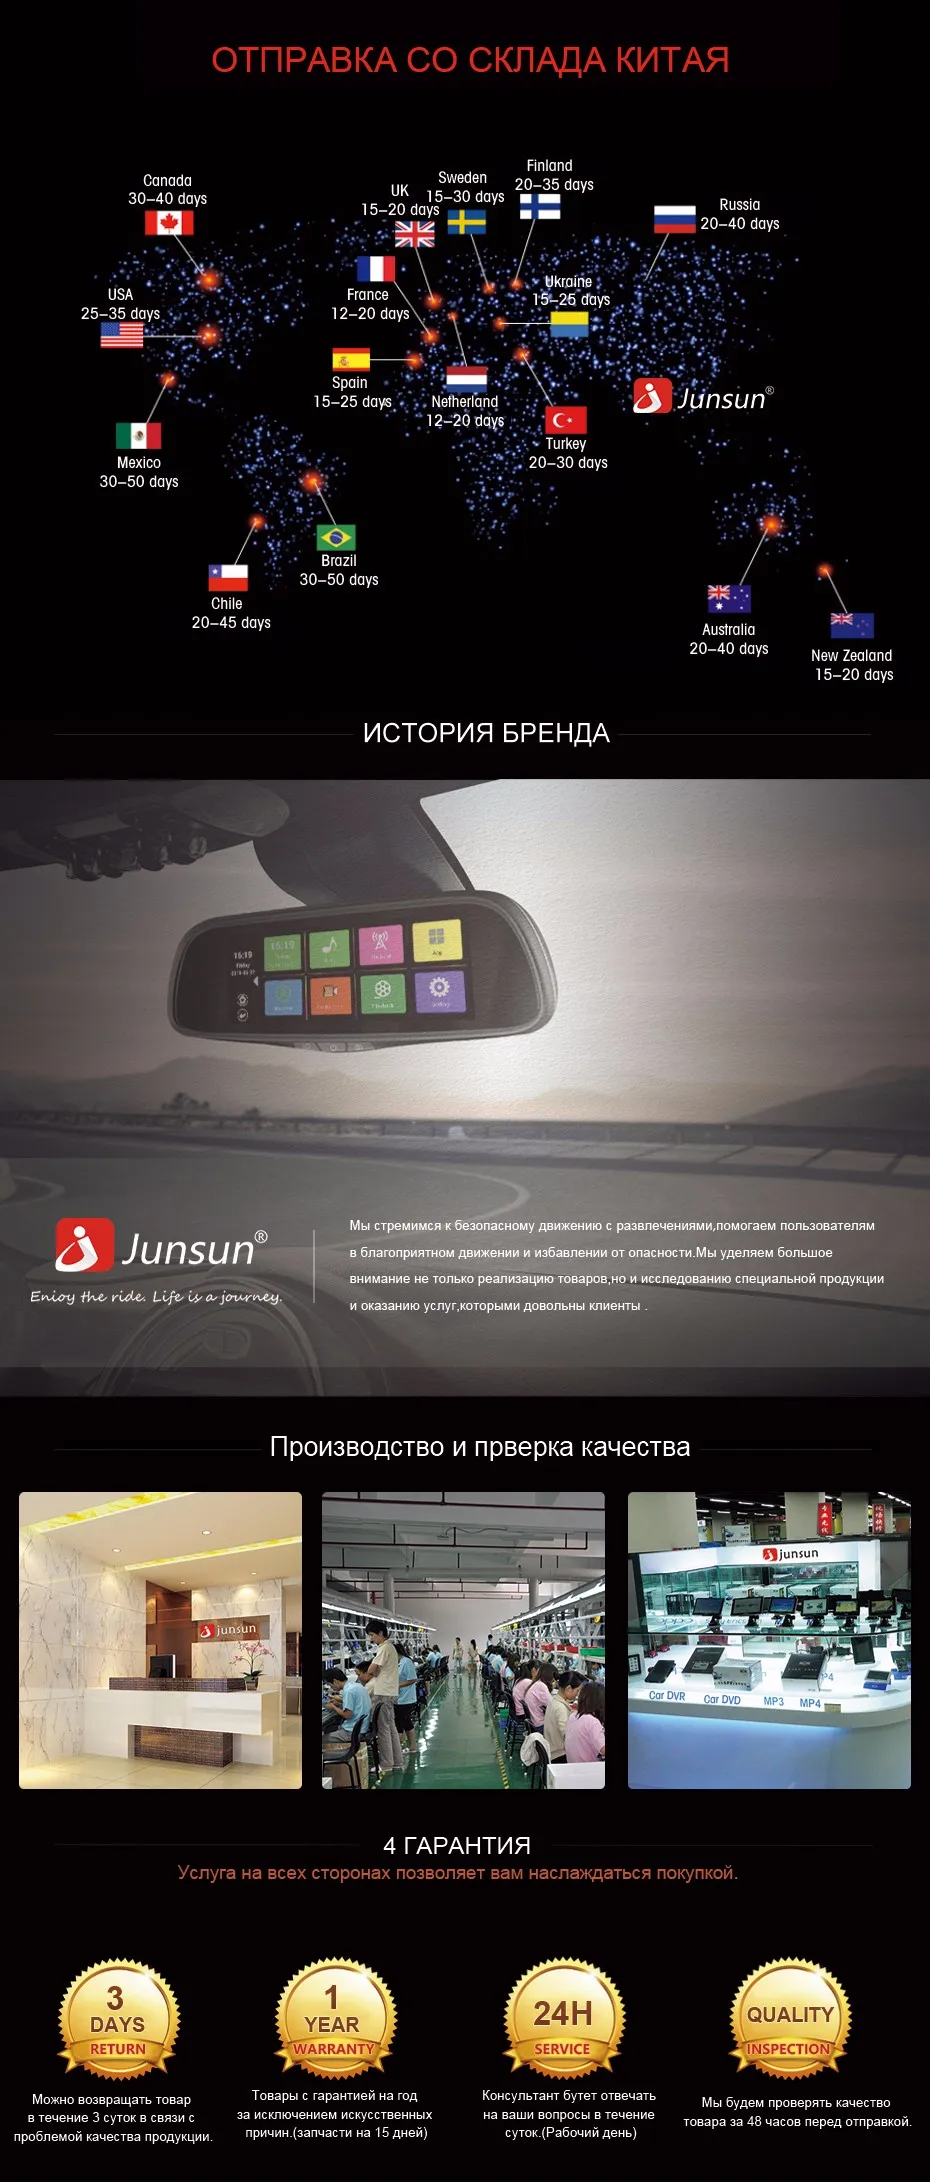 Junsun E515 Автомобильный видеорегистратор 3 г зеркало 6.8" регистраторы Full HD 1080 P видеомагнитофон Камера Android 5.0 gps зеркало заднего вида Регистратор